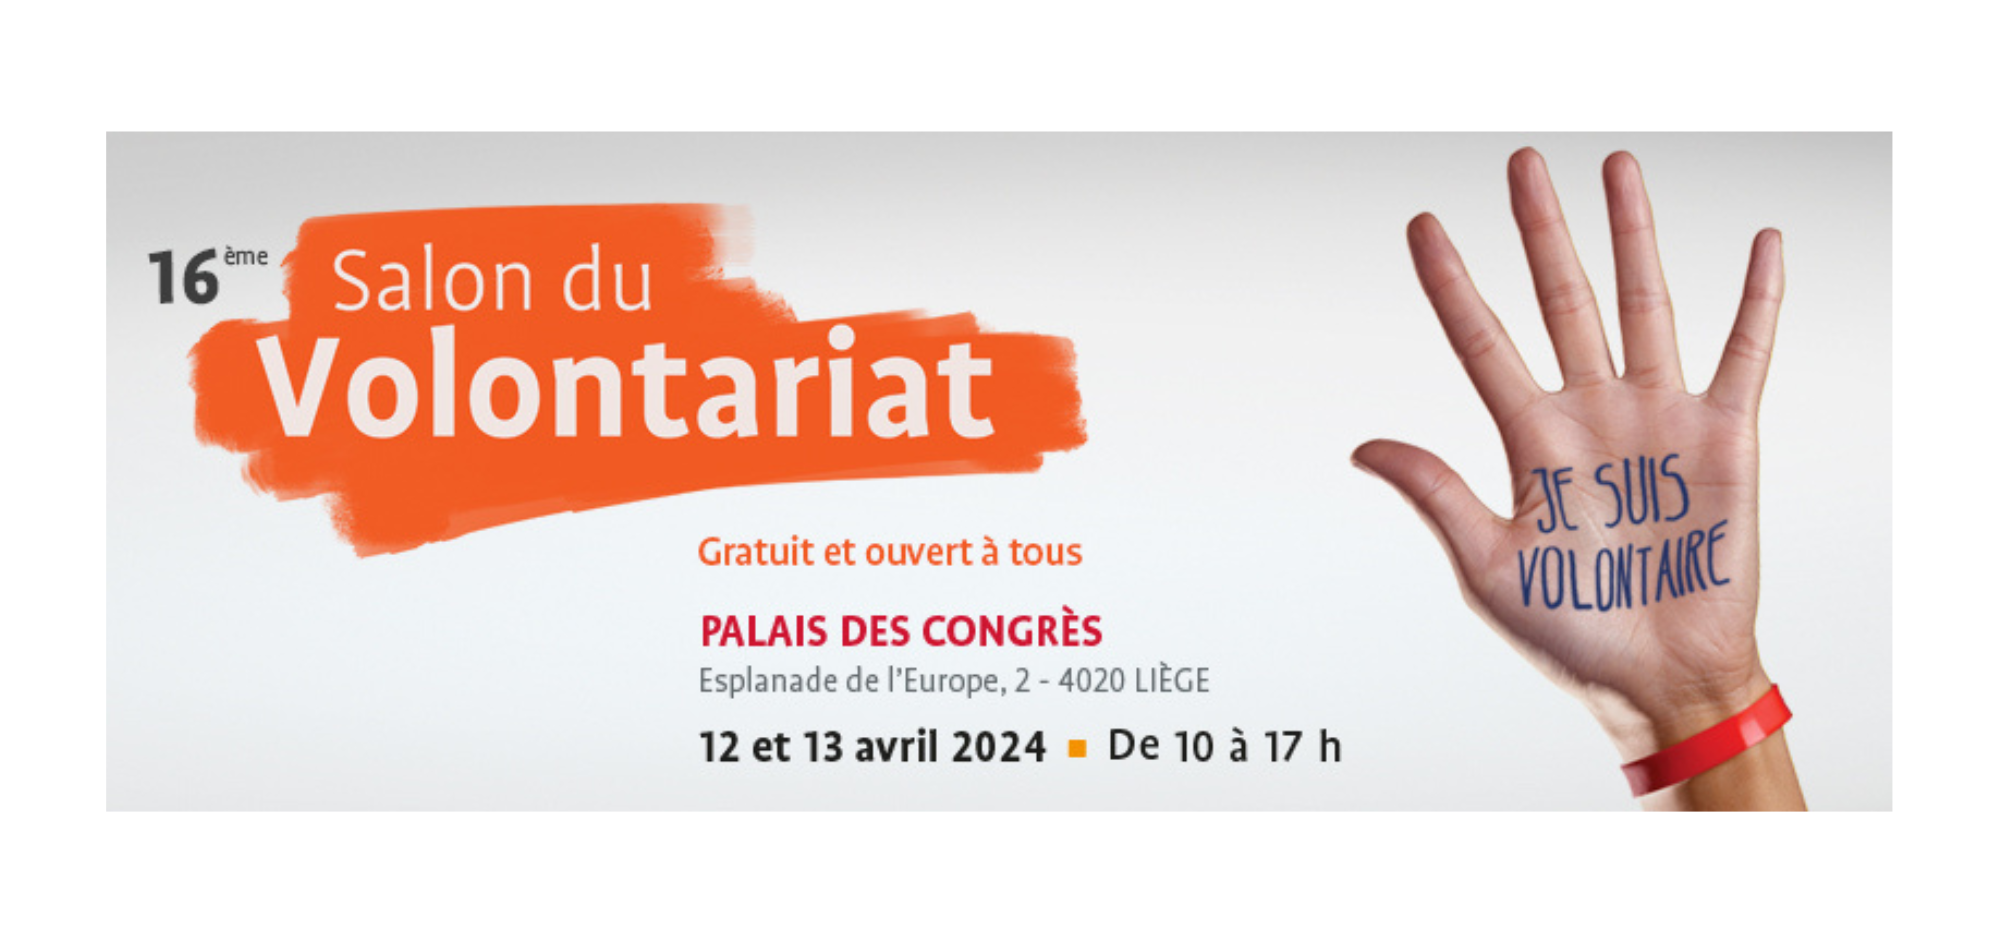 L’ONE au Salon du Volontariat à Liège les 12 et 13 avril 2024 